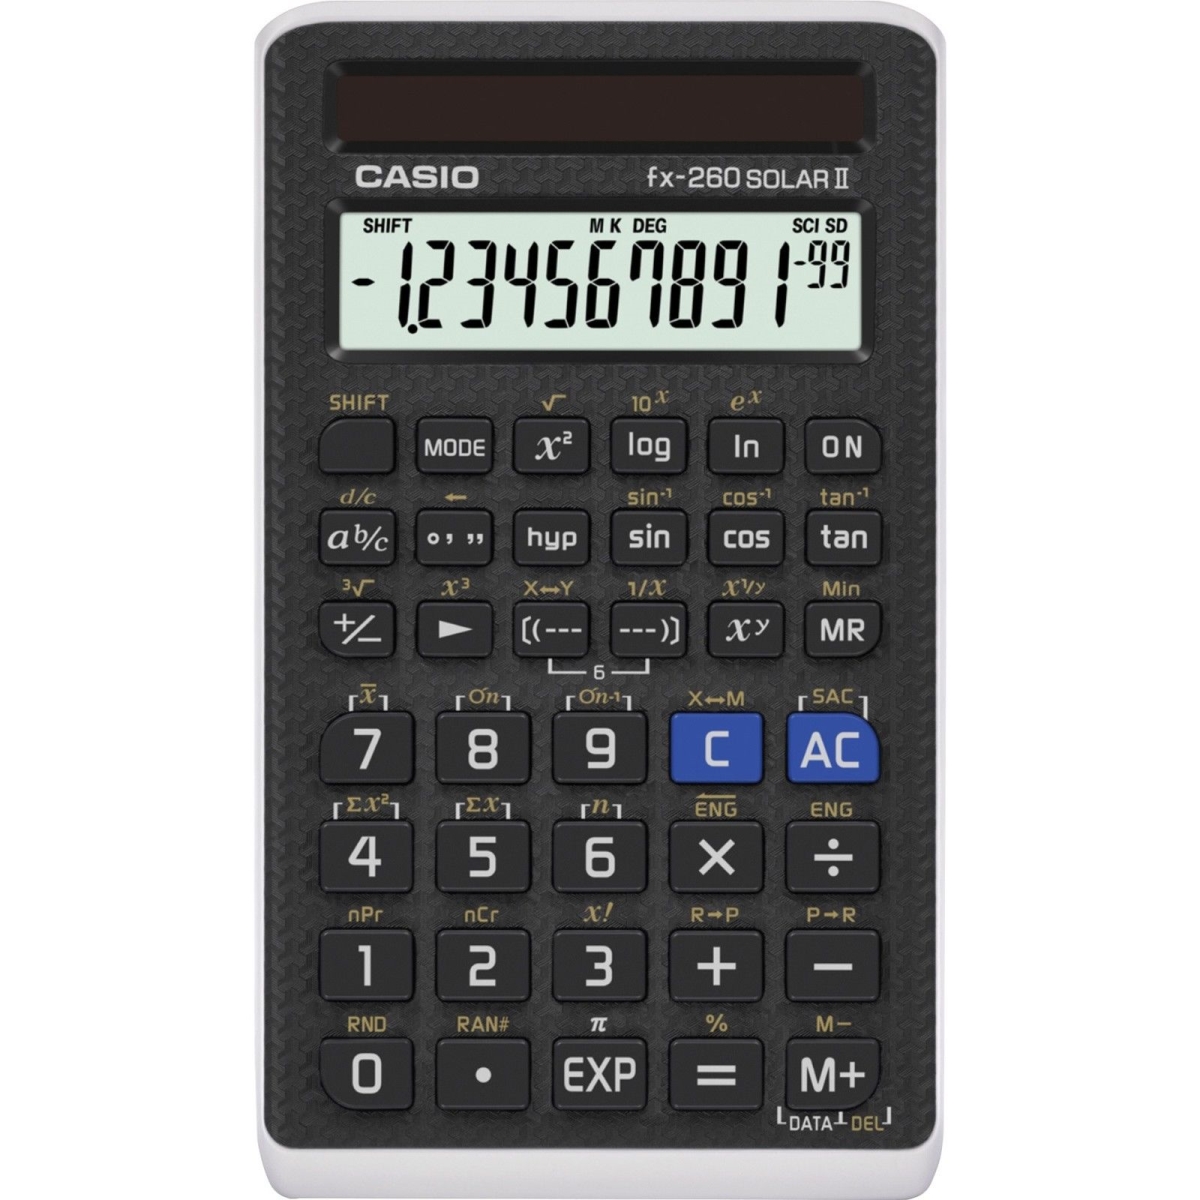 Casio Csofx260slrii Scientific Solar-powered Calculator, Black